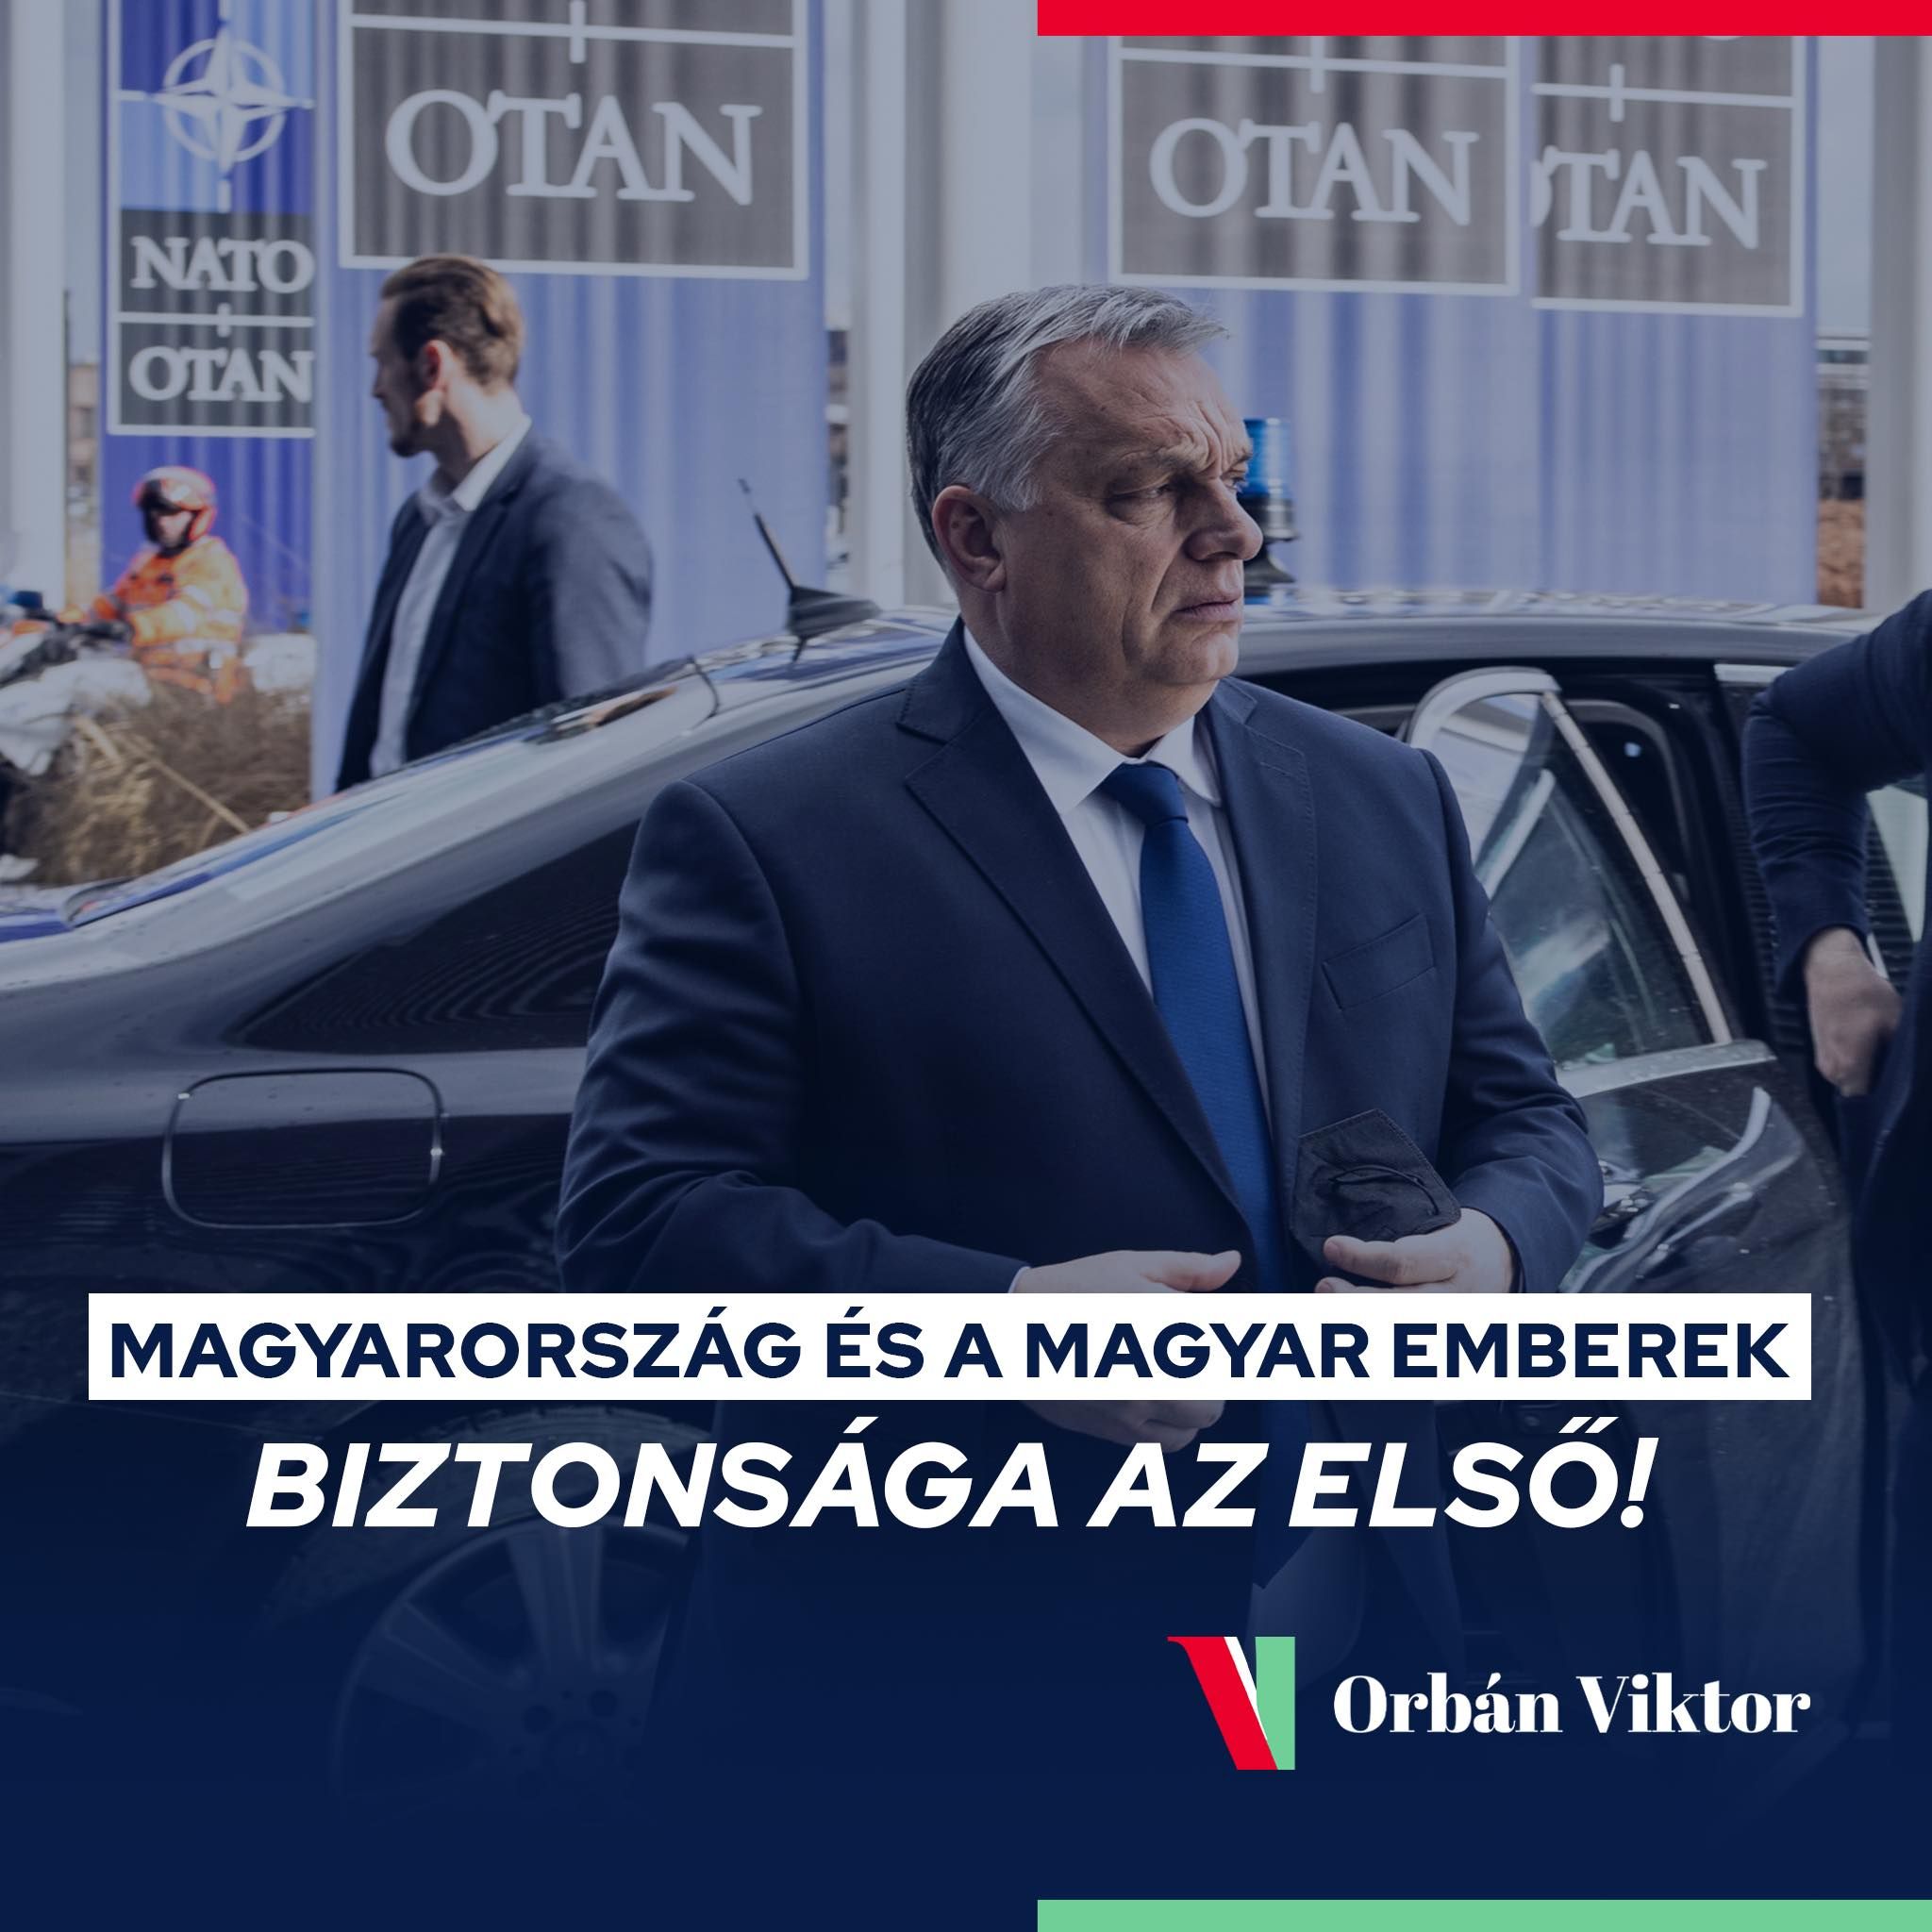 Orbán Viktor akkorát süketelt a Facebookon, hogy talán ő maga is unja már